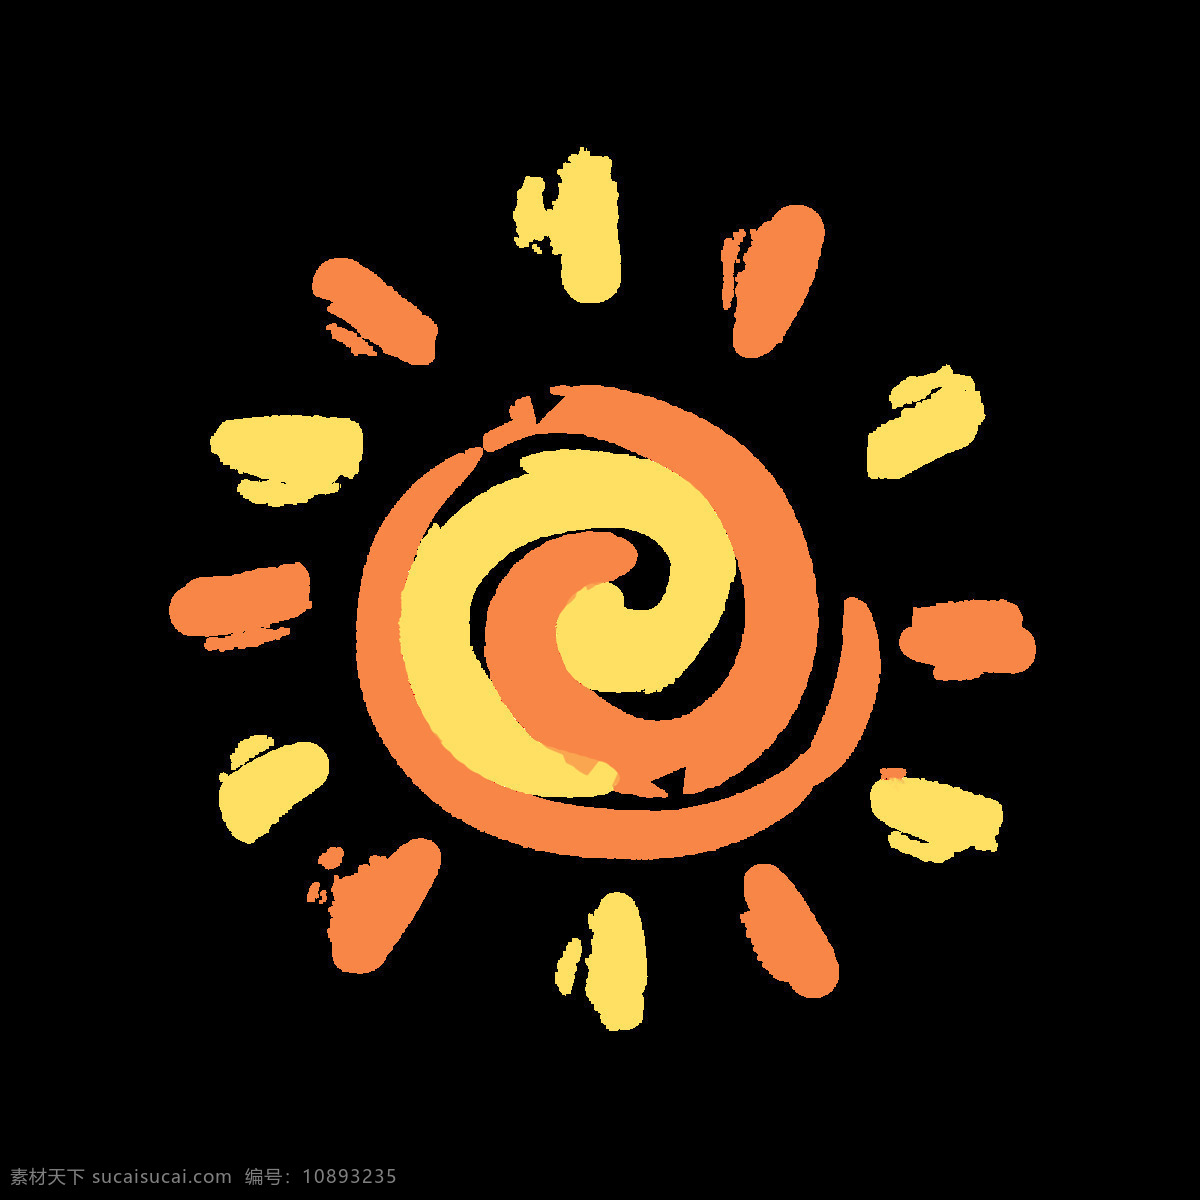 太阳素材 太阳矢量图 卡通太阳 太阳简笔画 手绘太阳 分层